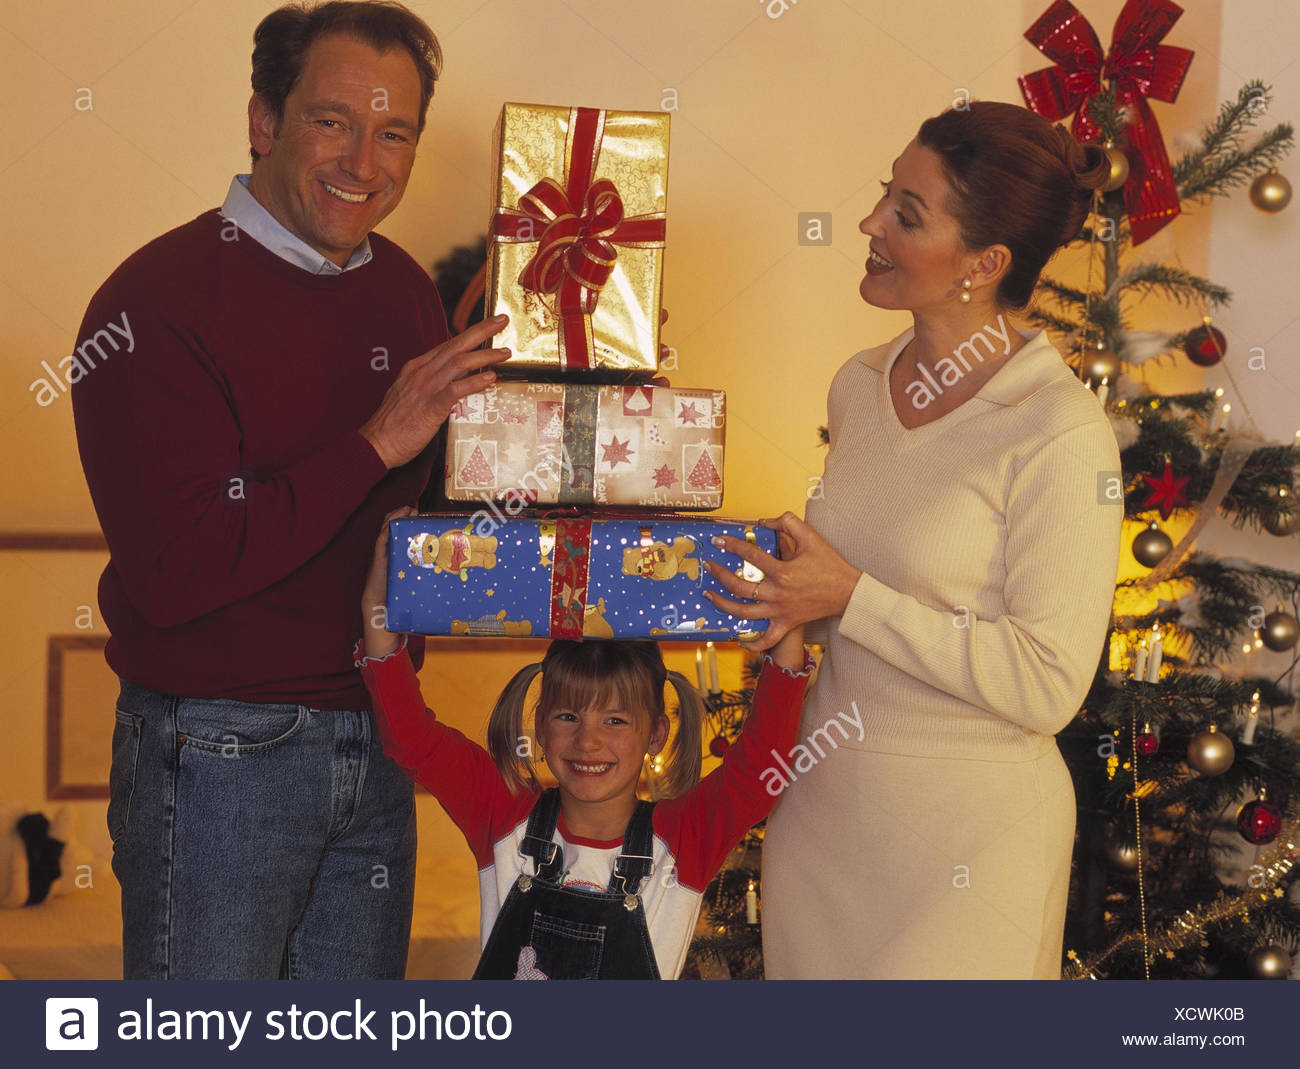 Regali Di Natale Per I Figli.Natale Famiglia Regali Di Natale Felicemente La Vigilia Di Natale La Vigilia Di Natale Per Natale